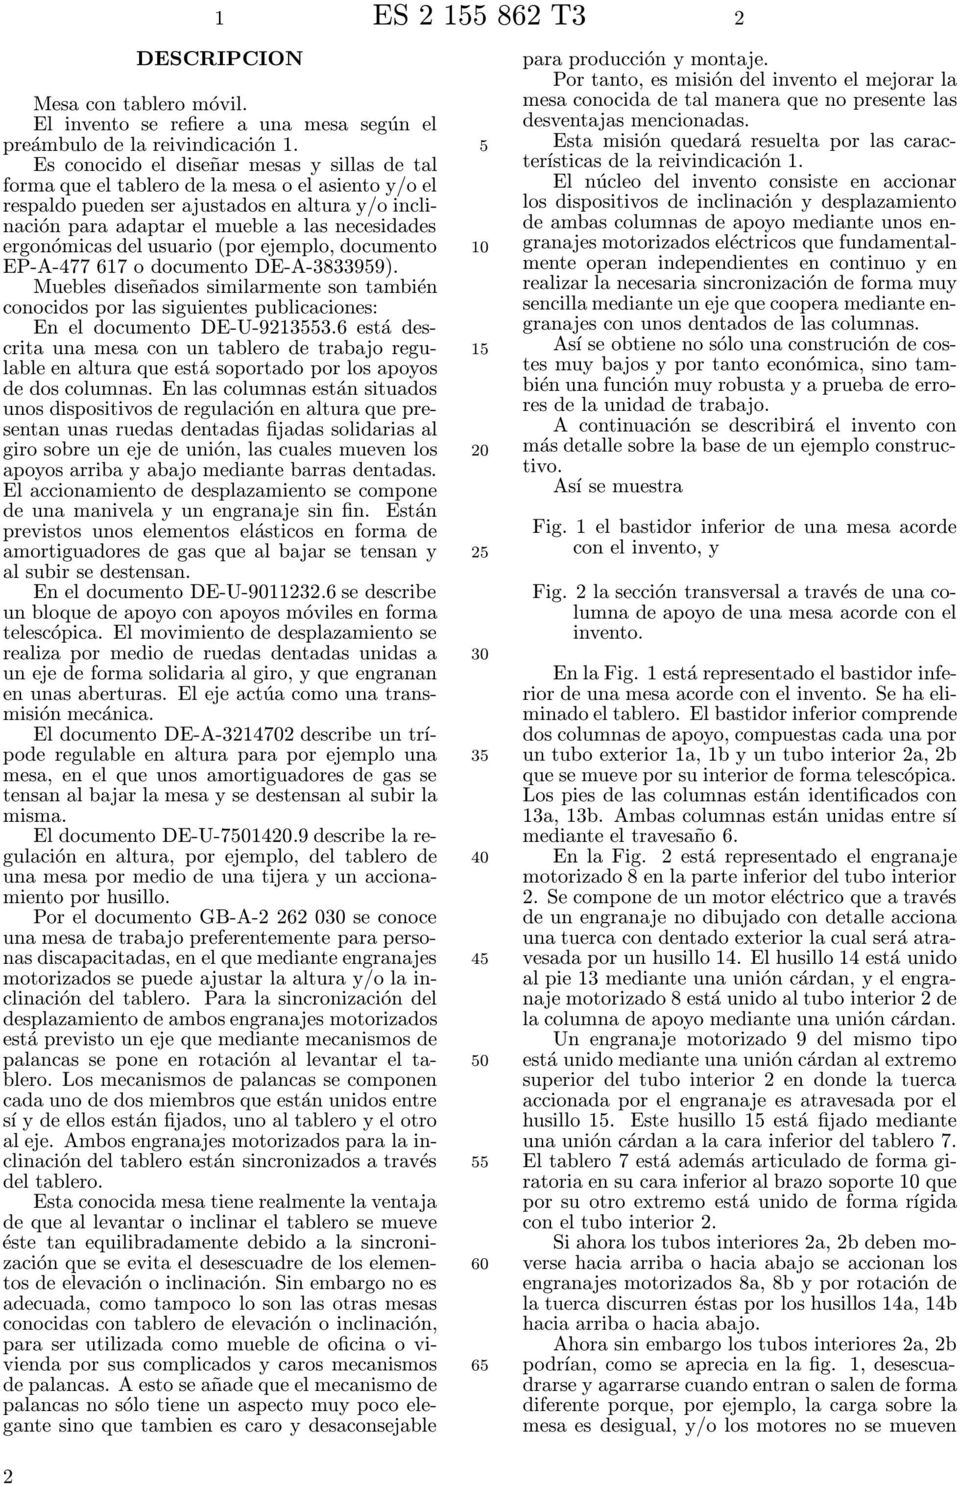 ergonómicas del usuario (por ejemplo, documento EP-A-477 617 o documento DE-A-383399).